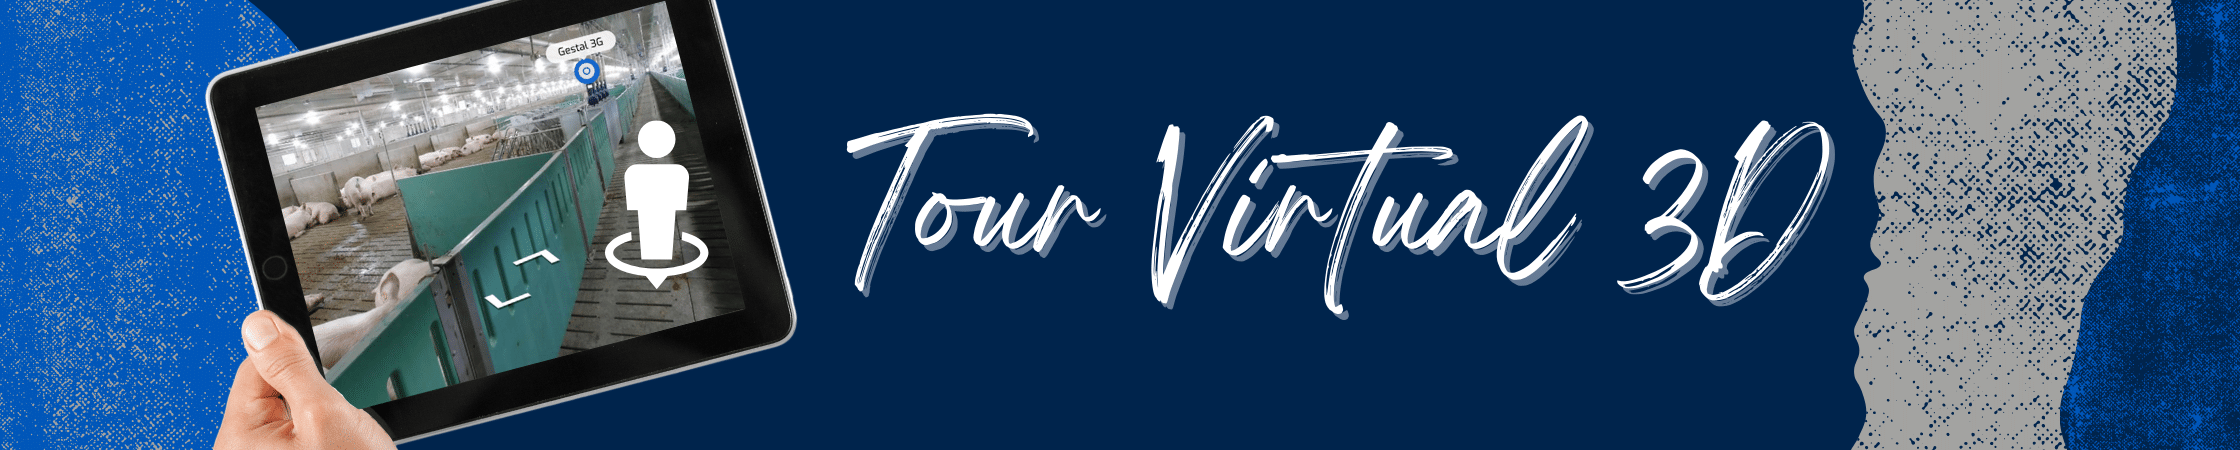 TOUR VIRTUAL 3D